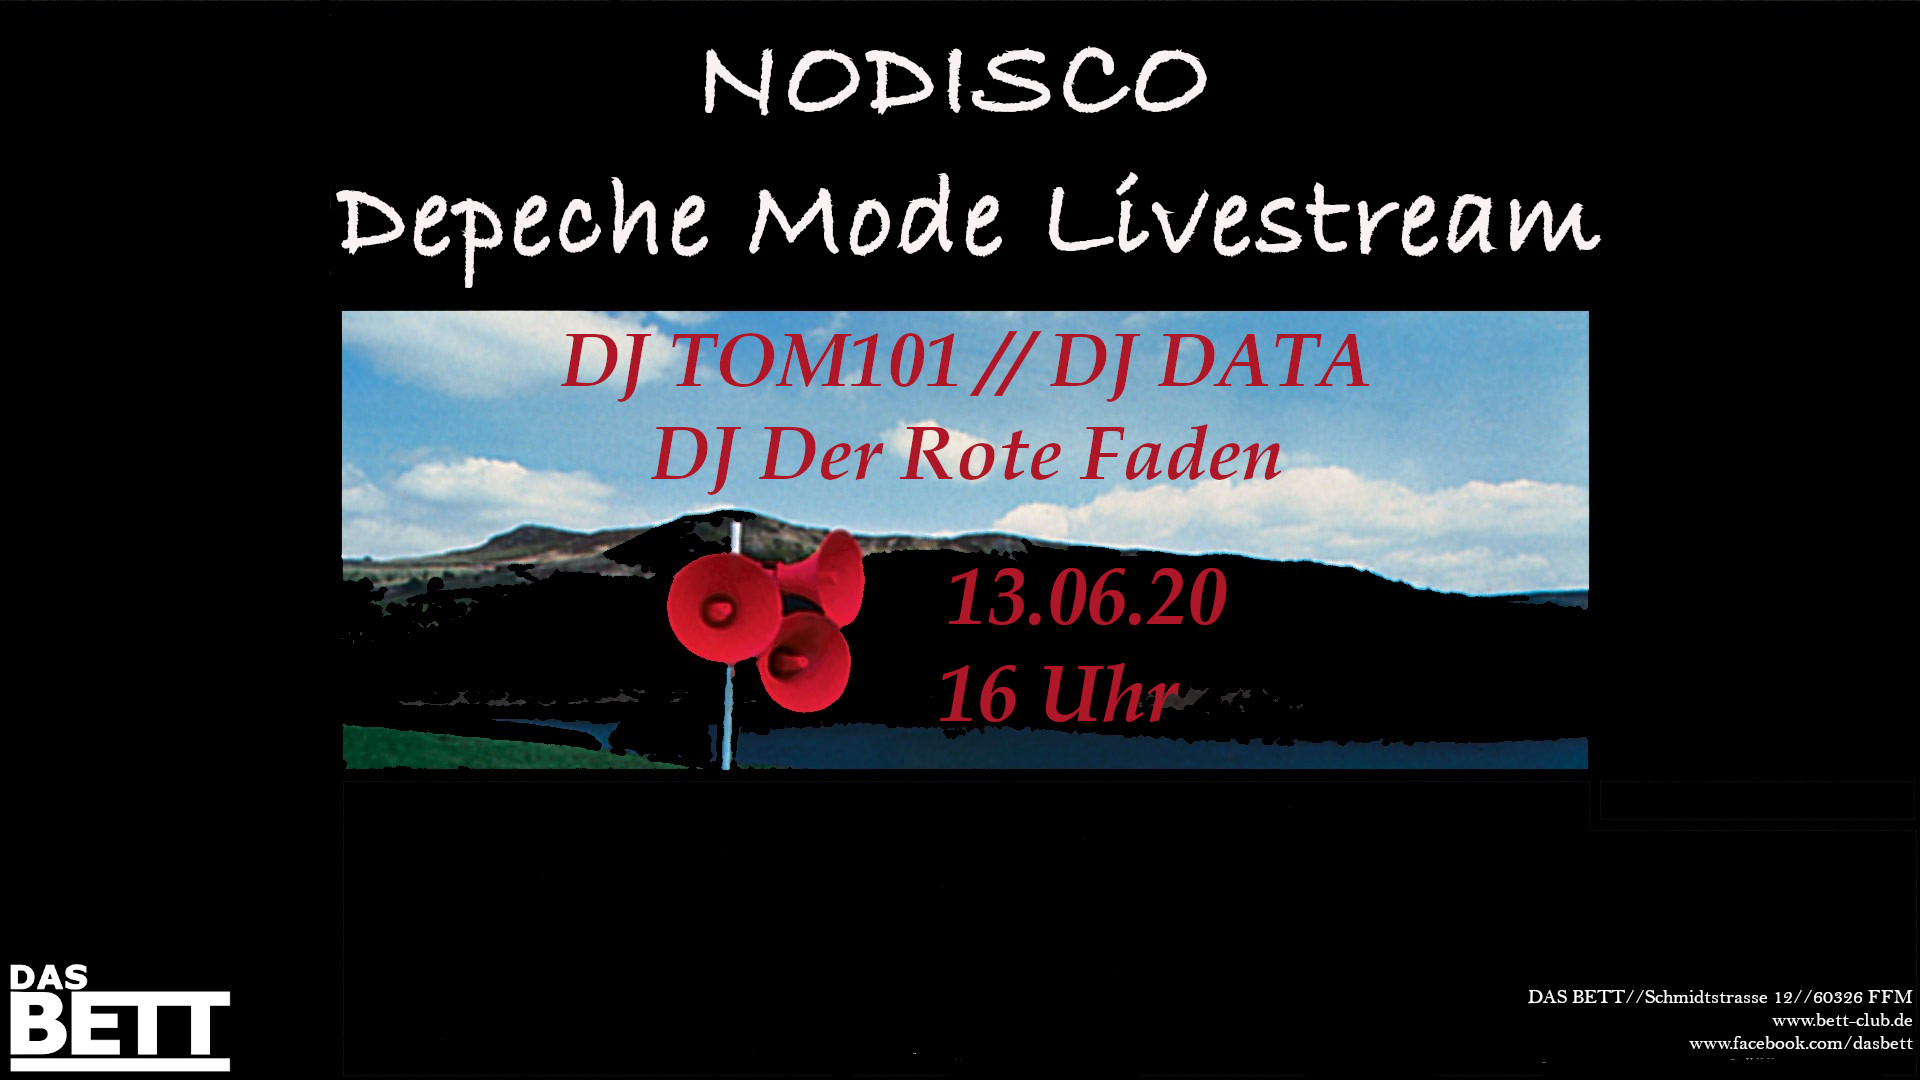 NODISCO – Depeche Mode Livestream